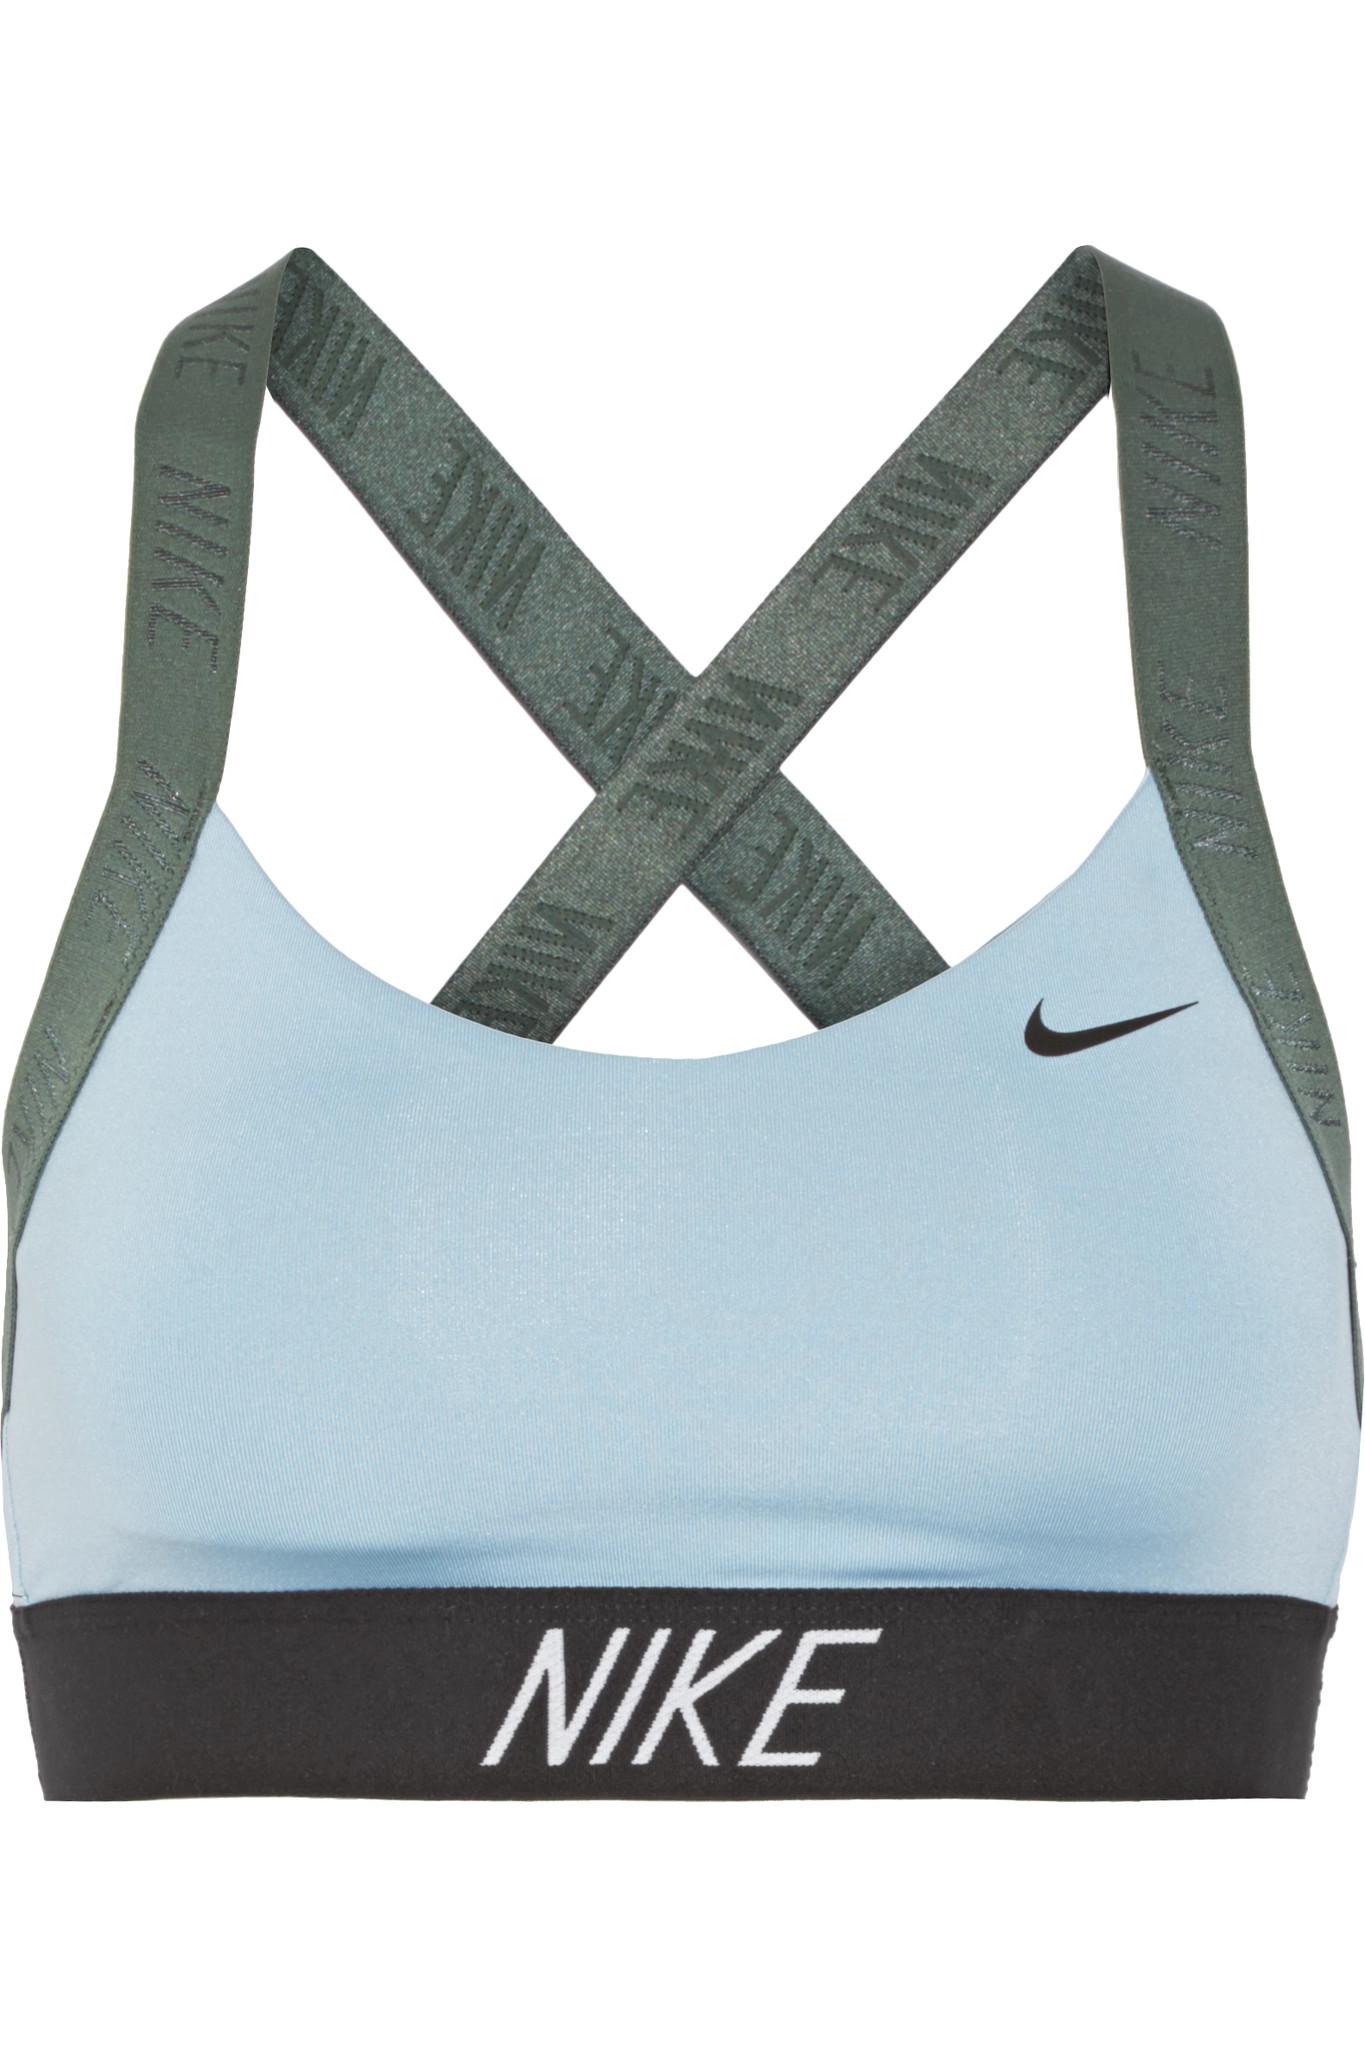 Nike Pro Indy Dri-fit Stretch Sports Bra in Blue